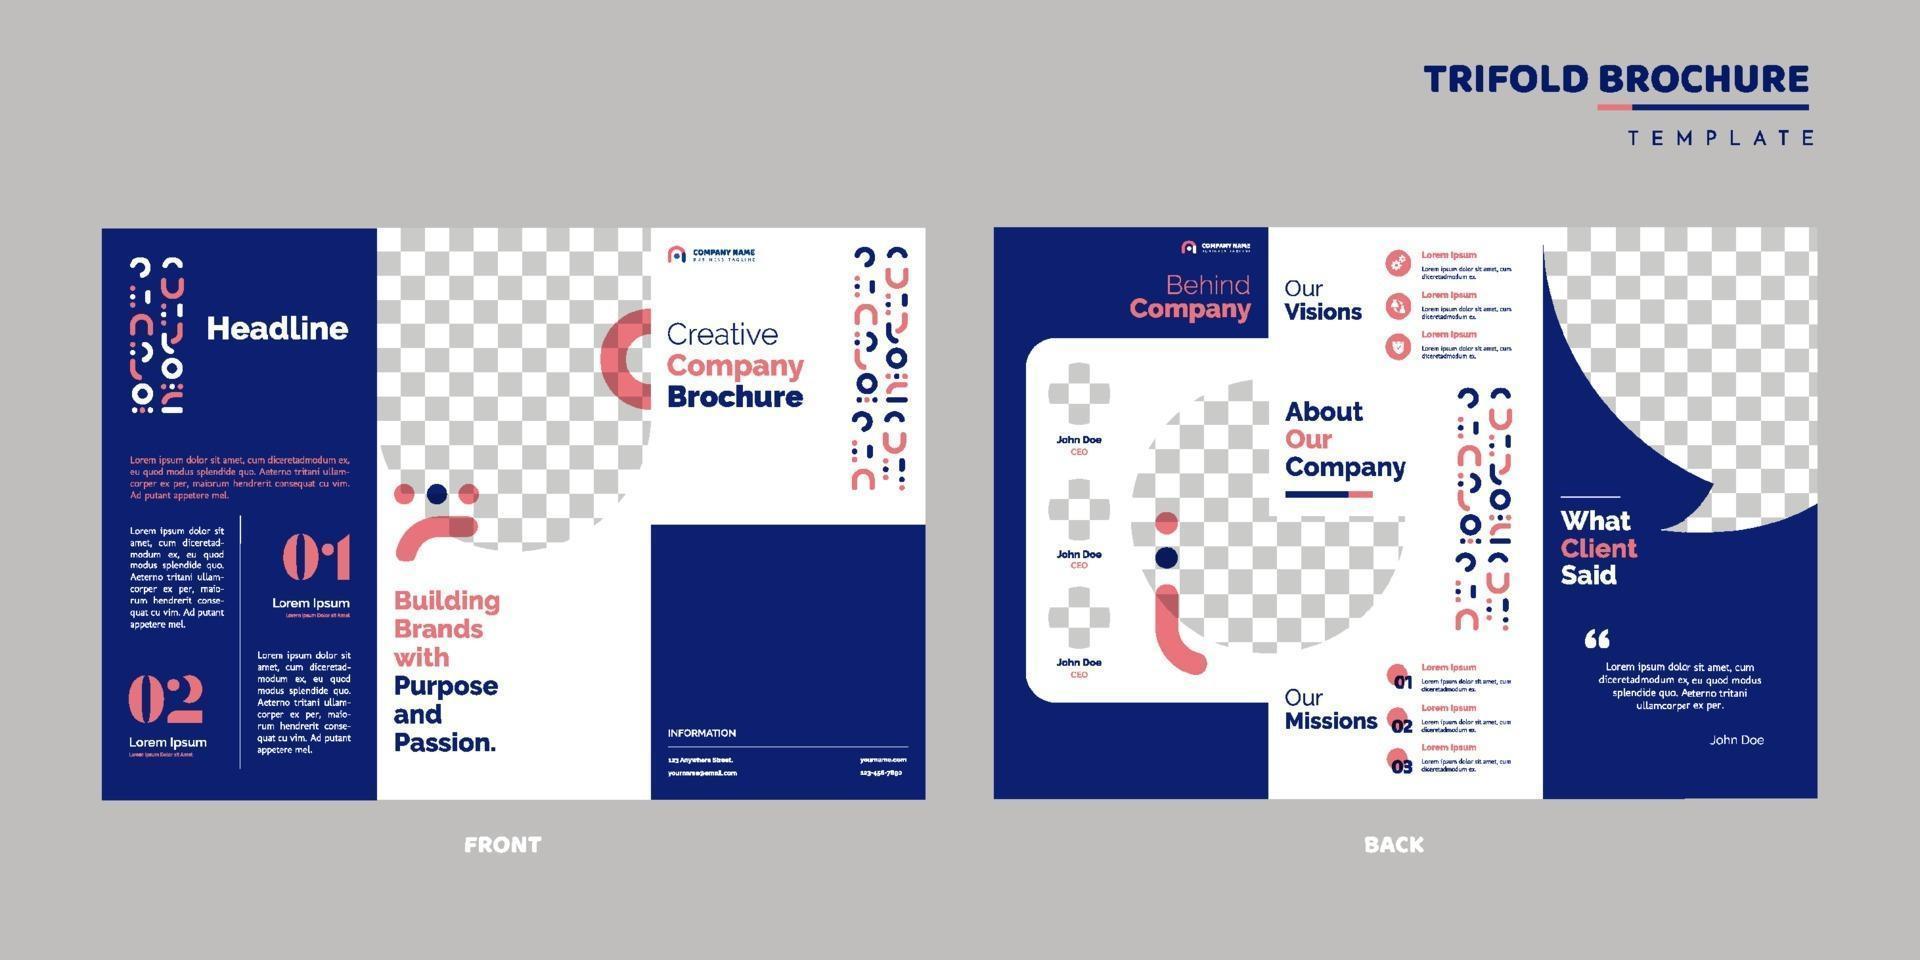 zakelijke driebladige brochure ontwerpsjabloon vector